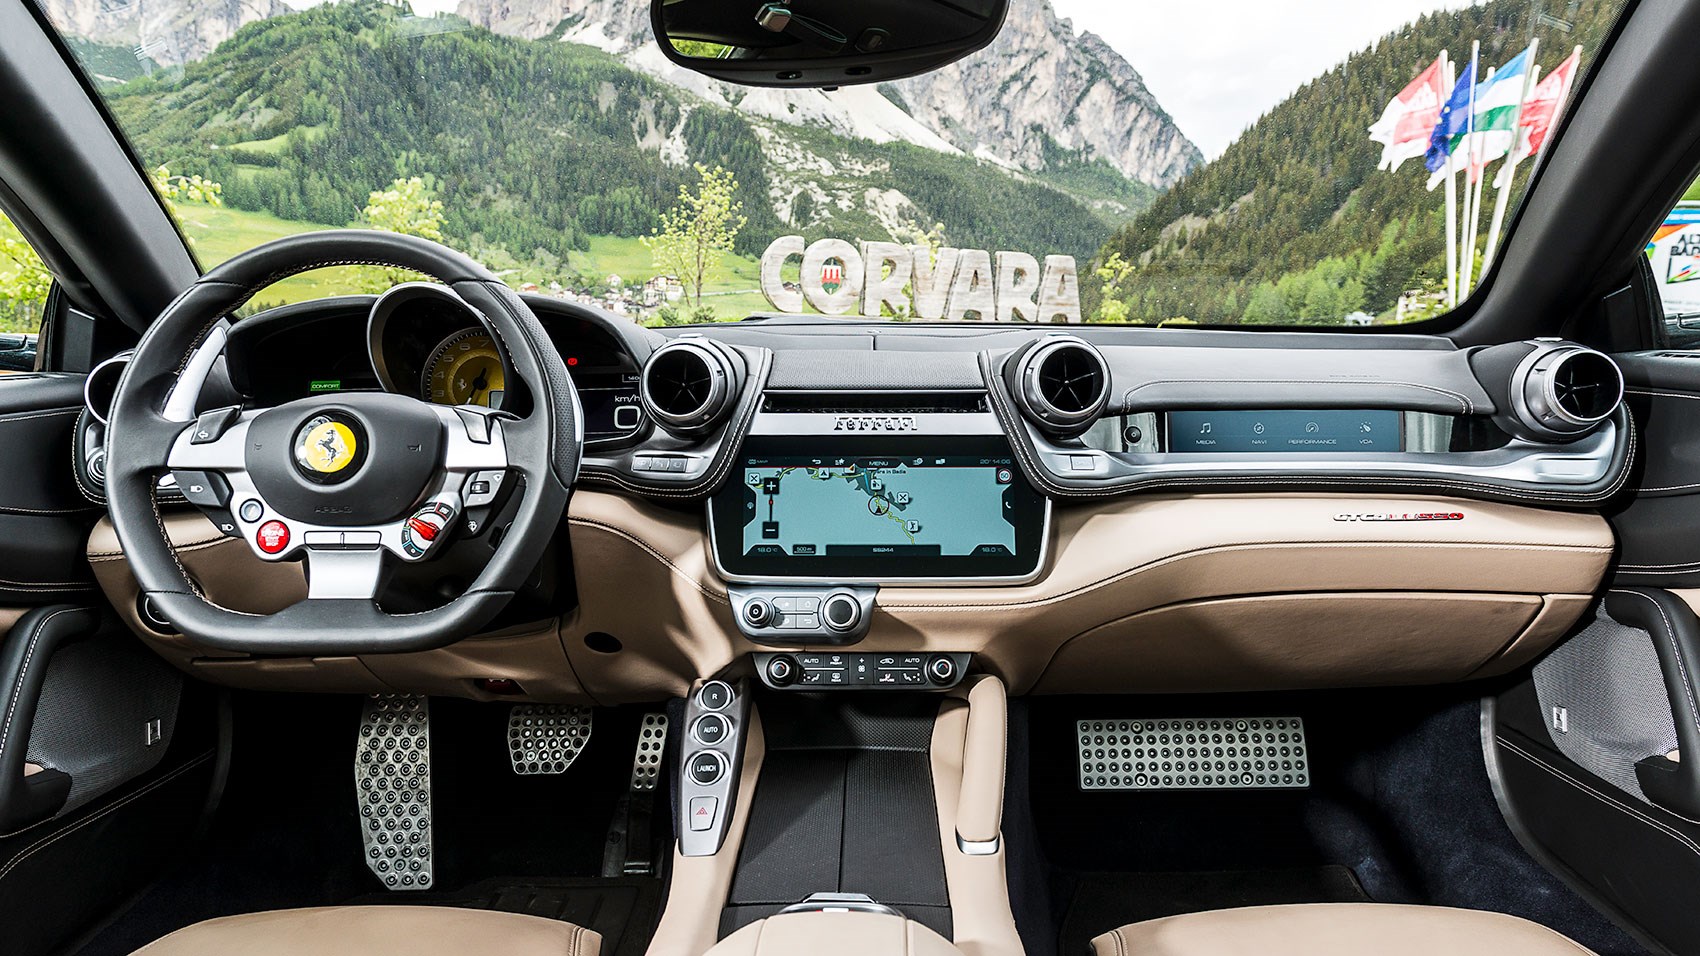 Ferrari GTC4Lusso Backgrounds, Compatible - PC, Mobile, Gadgets| 1700x956 px